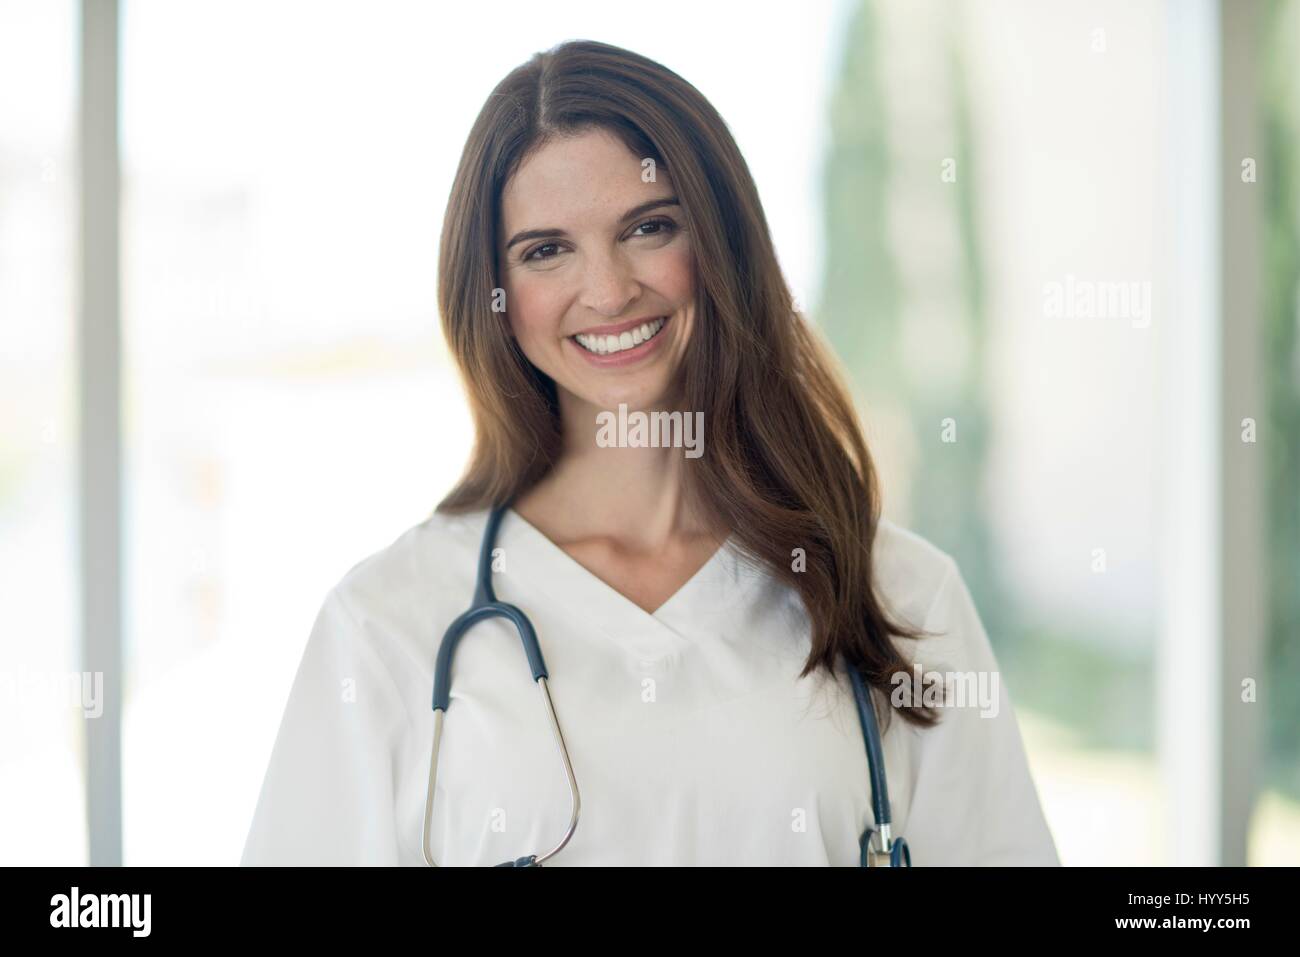 Mujeres profesionales médicos sonriente hacia la cámara, retrato. Foto de stock